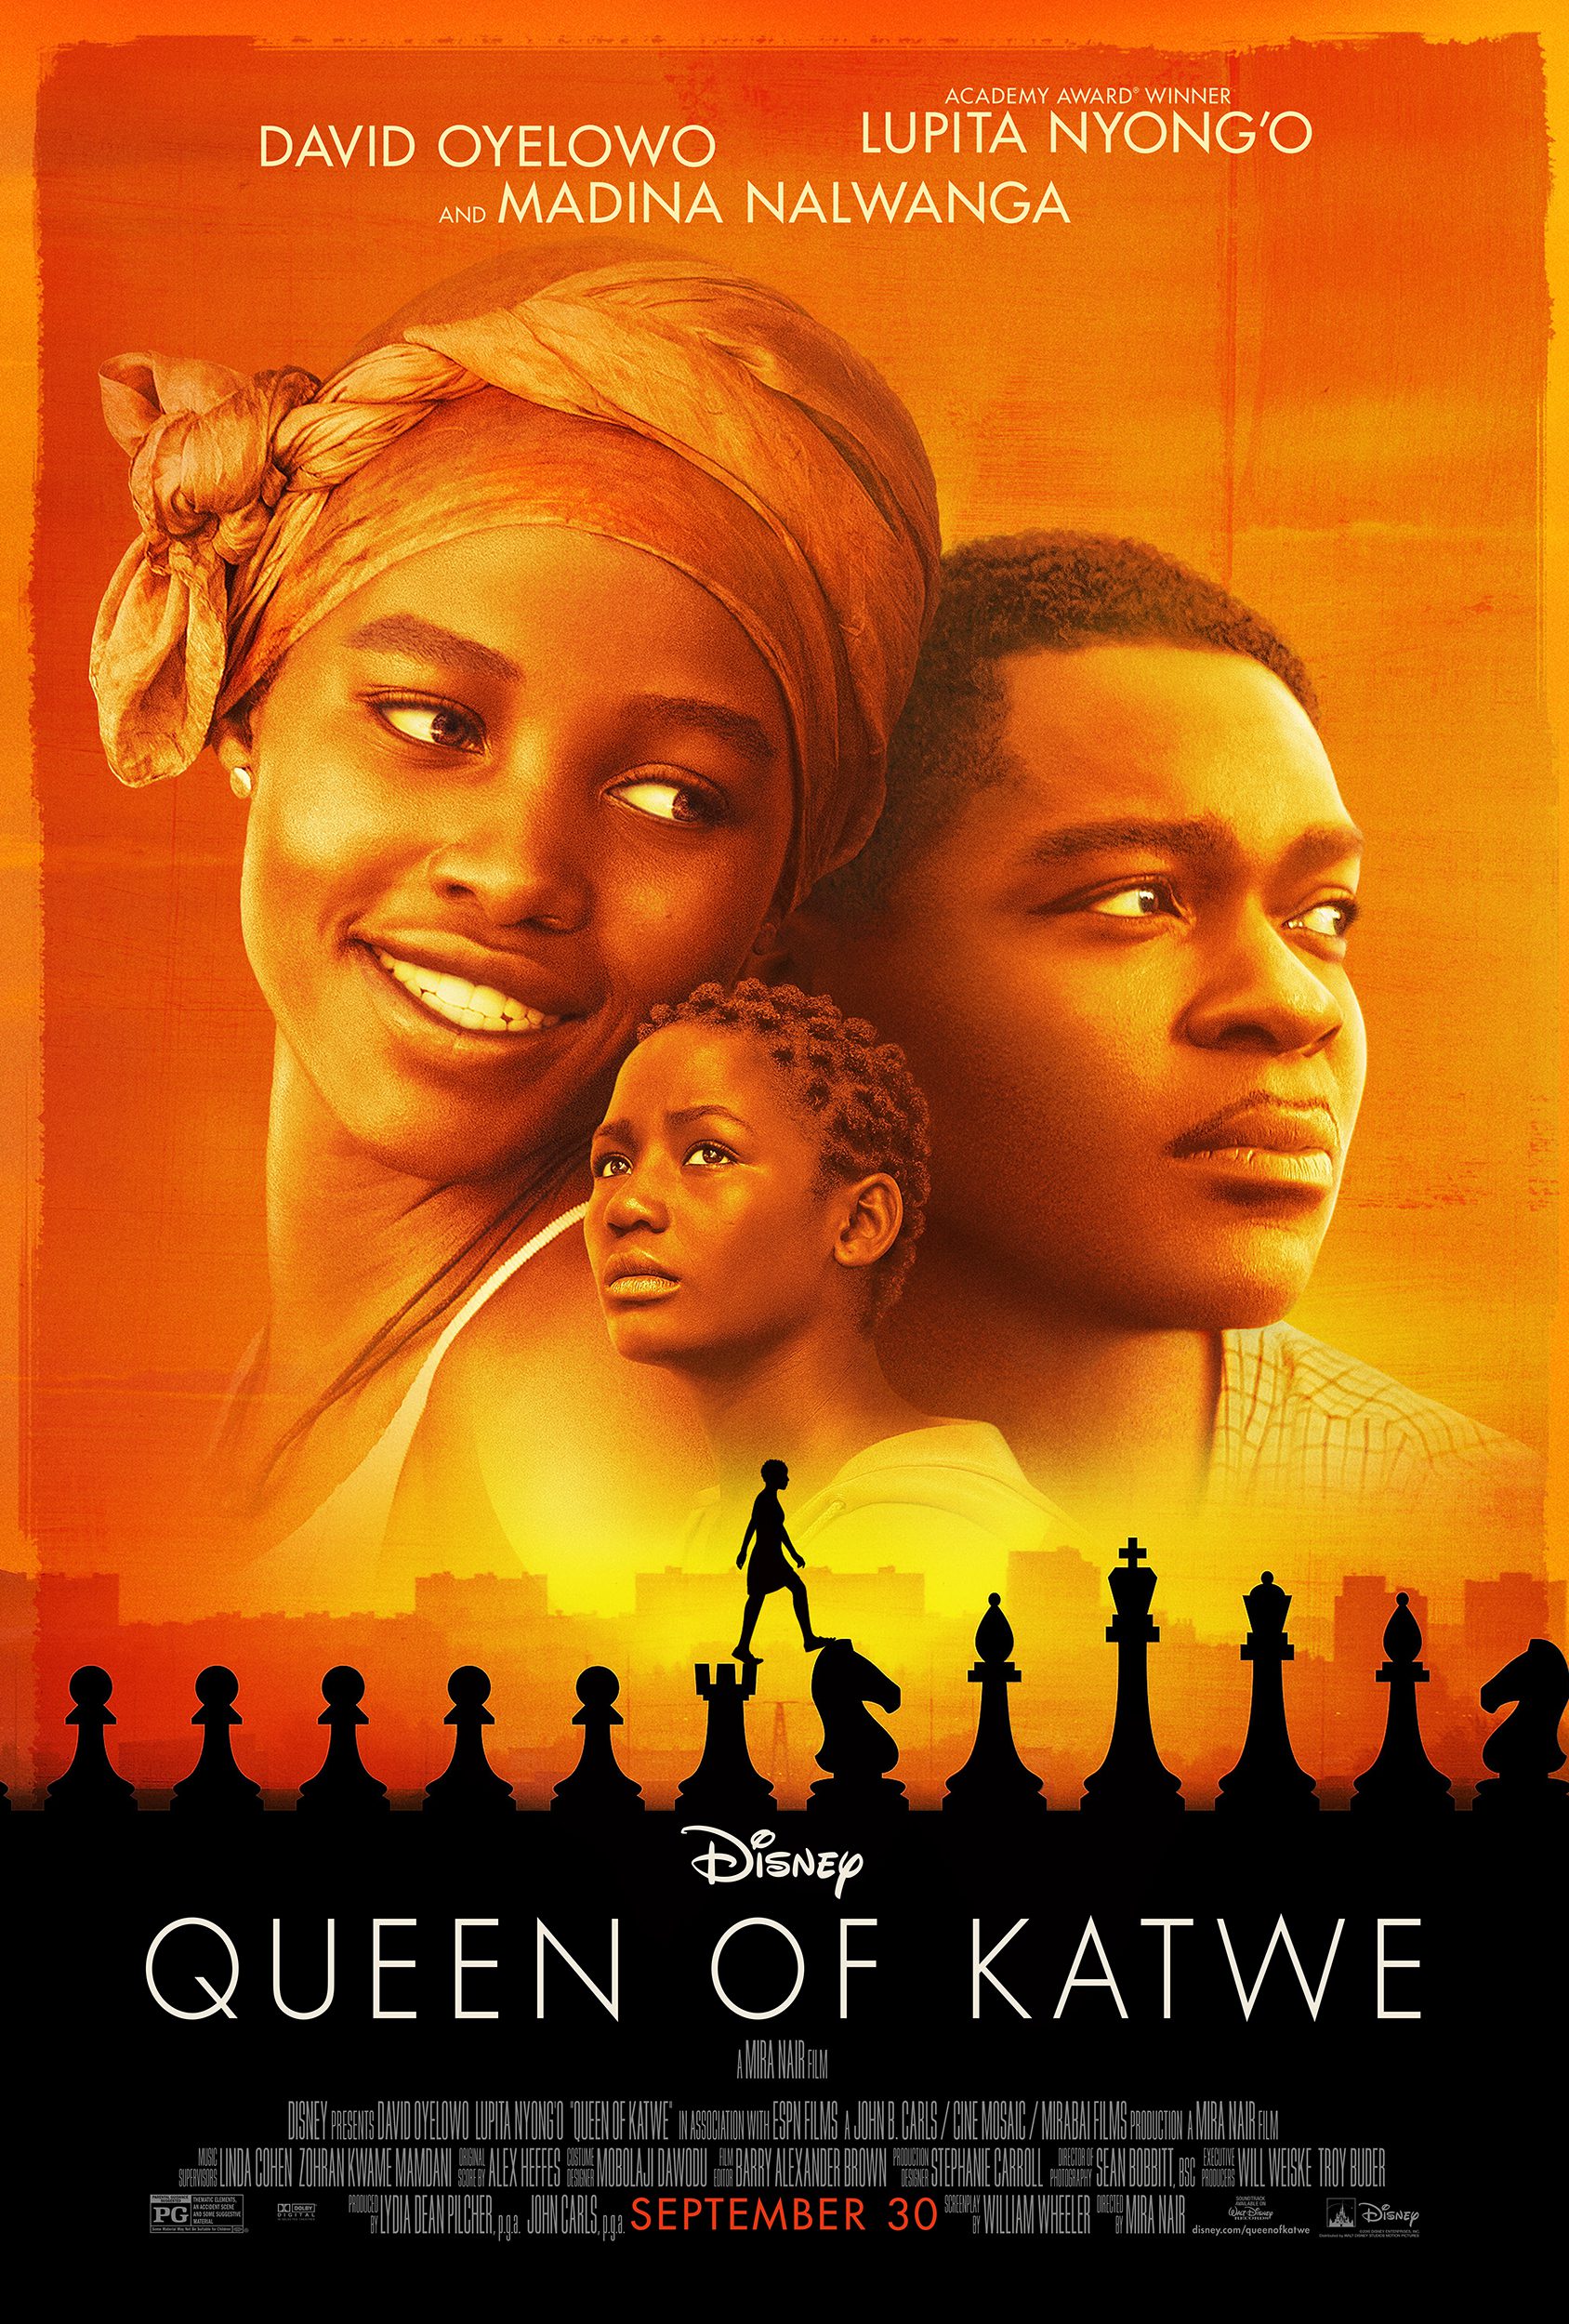 Disney’s Queen of Katwe